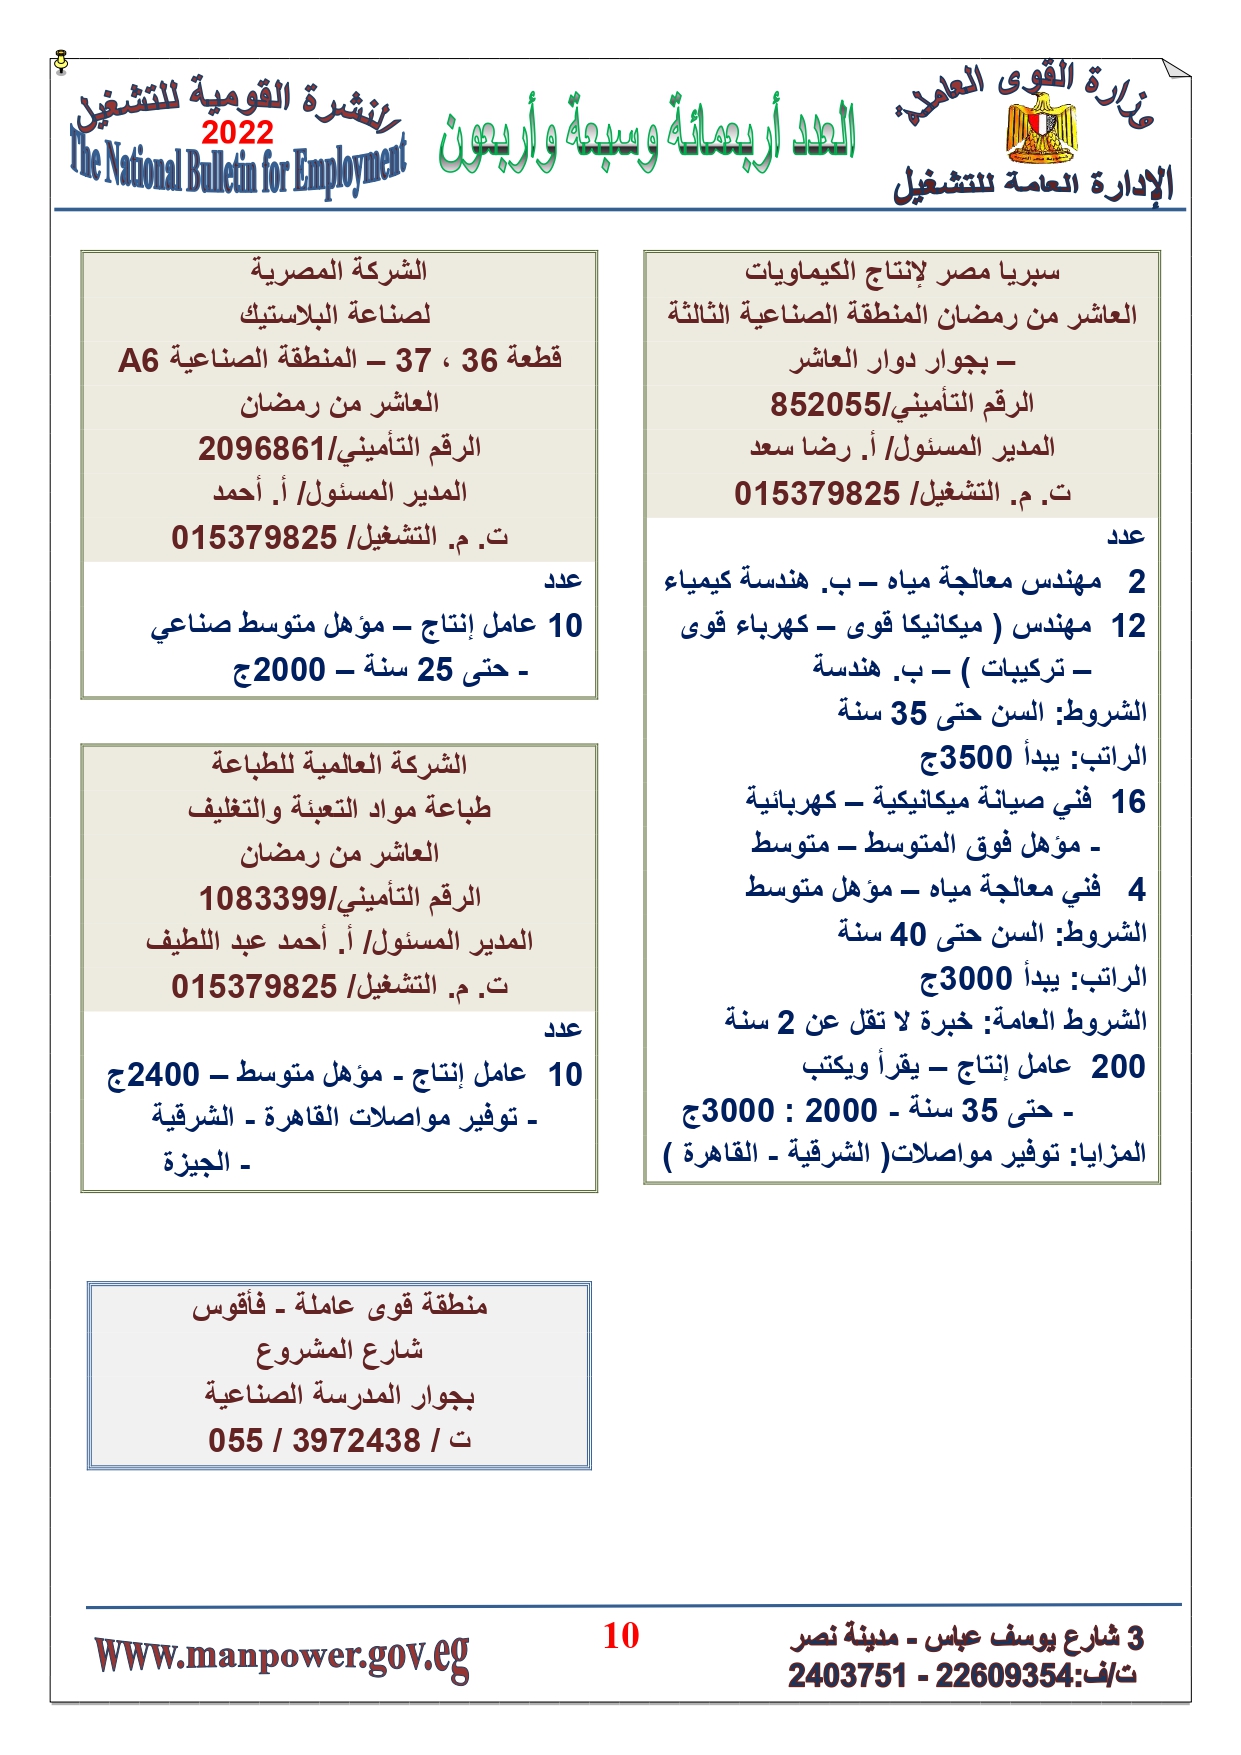 وظائف خالية بمصر وزارة القوي العاملة تعلن عن 2530 وظيفة شاغرة لجميع المؤهلات خلال فبراير ومارس 2022 6